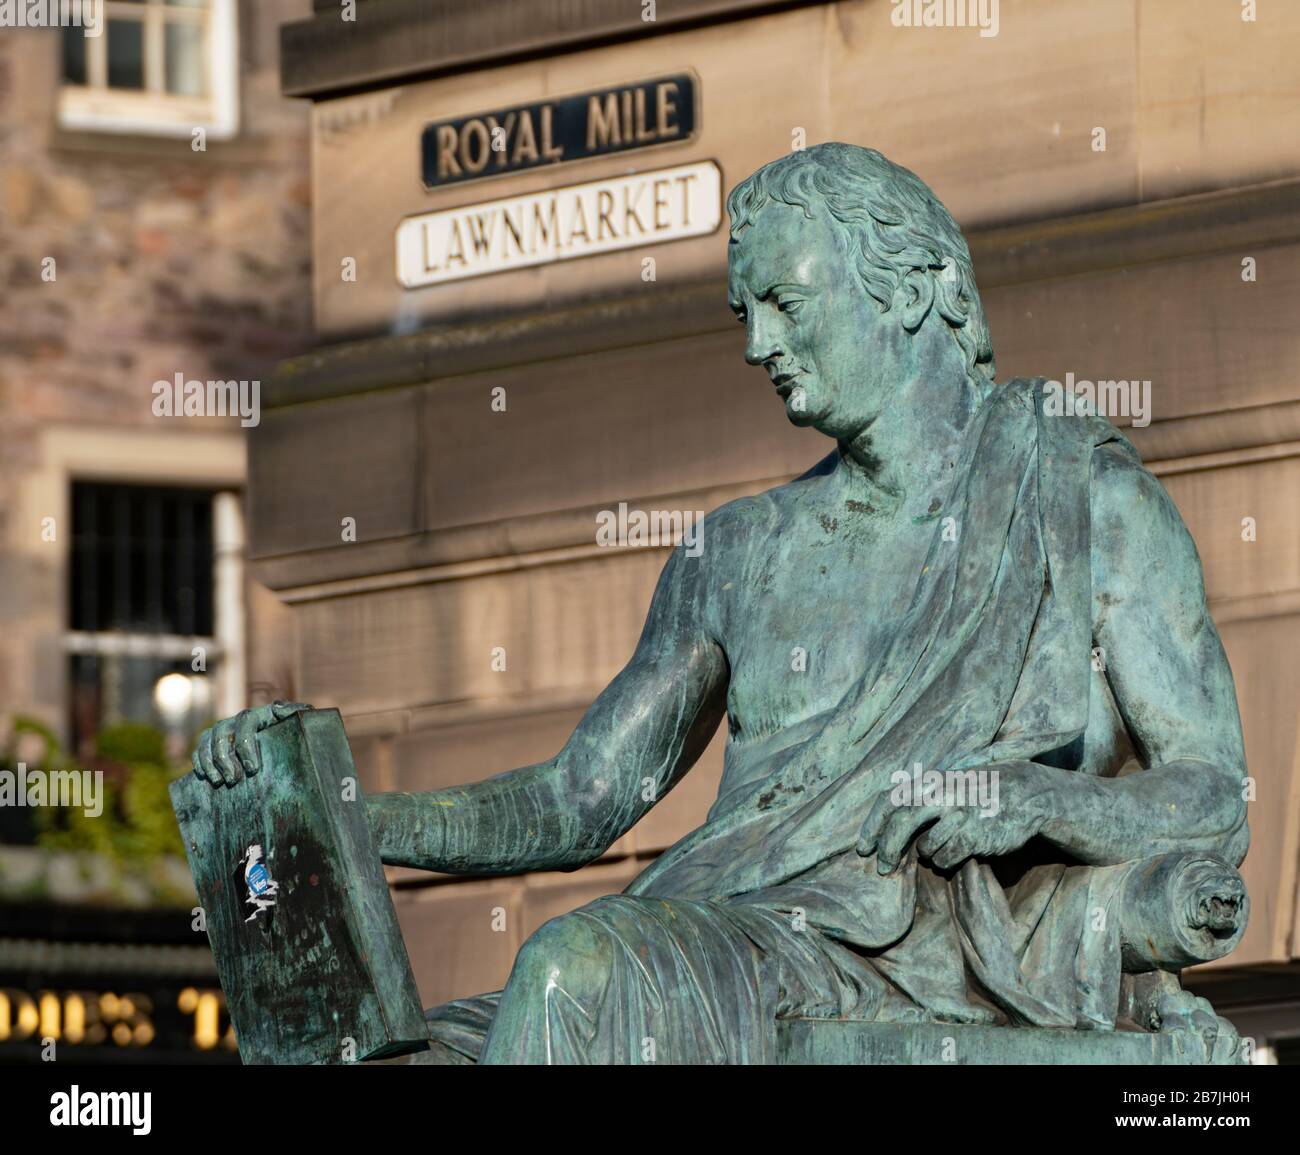 Statue von David Hume auf der Royal Mile in Edinburgh Old Town, Schottland, Großbritannien Stockfoto